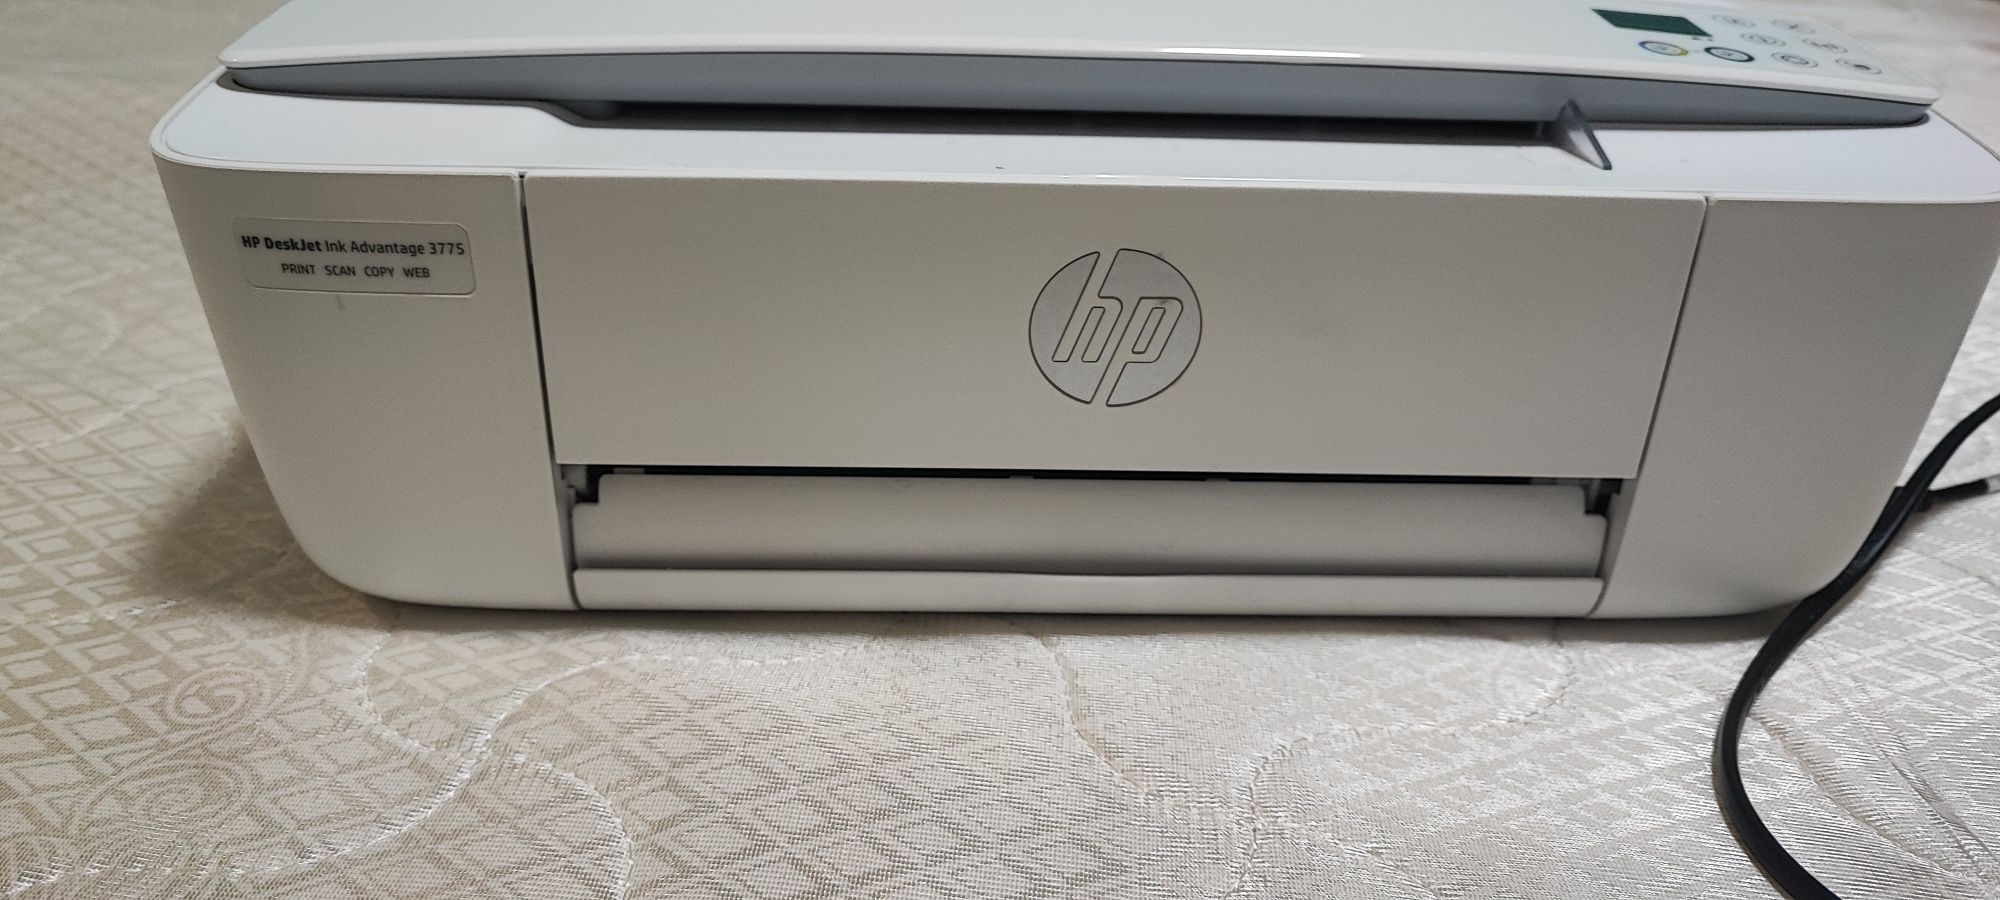 Цветной принтер HP с картриджами